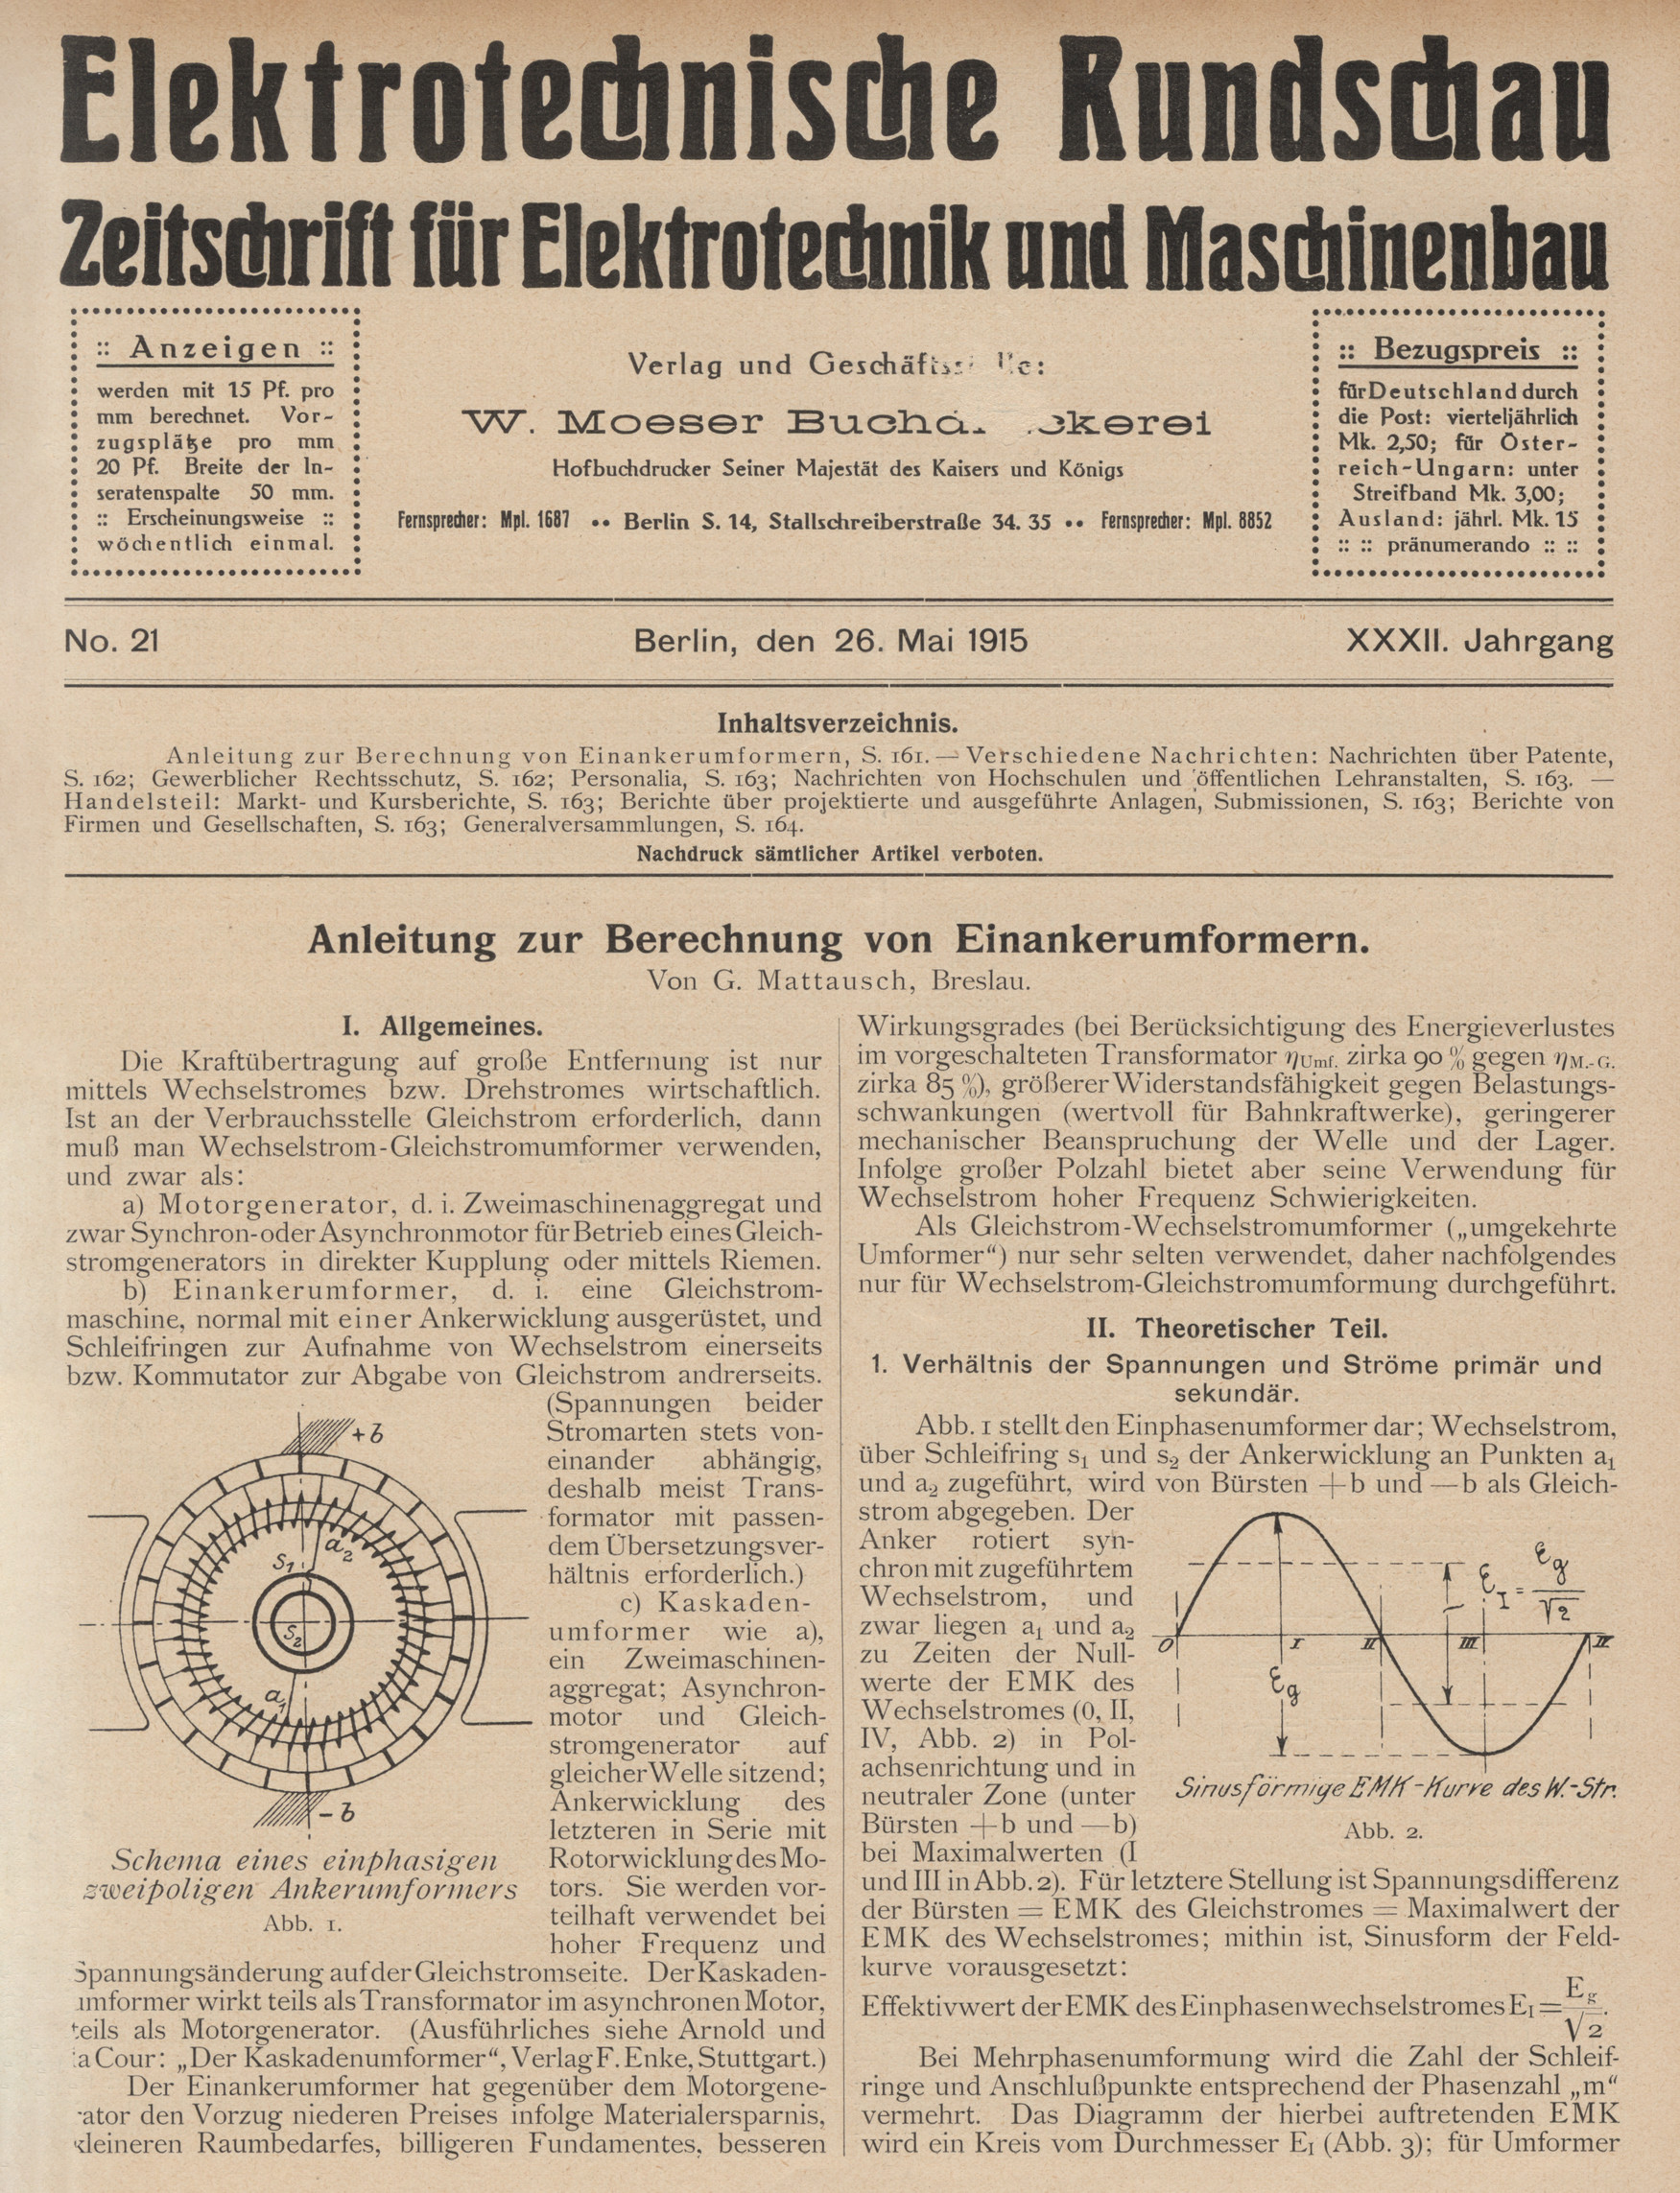 Elektrotechnische Rundschau : Zeitschrift für Elektrotechnik und Maschinenbau + Polytechnische Rundschau, No. 21, XXXII. Jahrgang